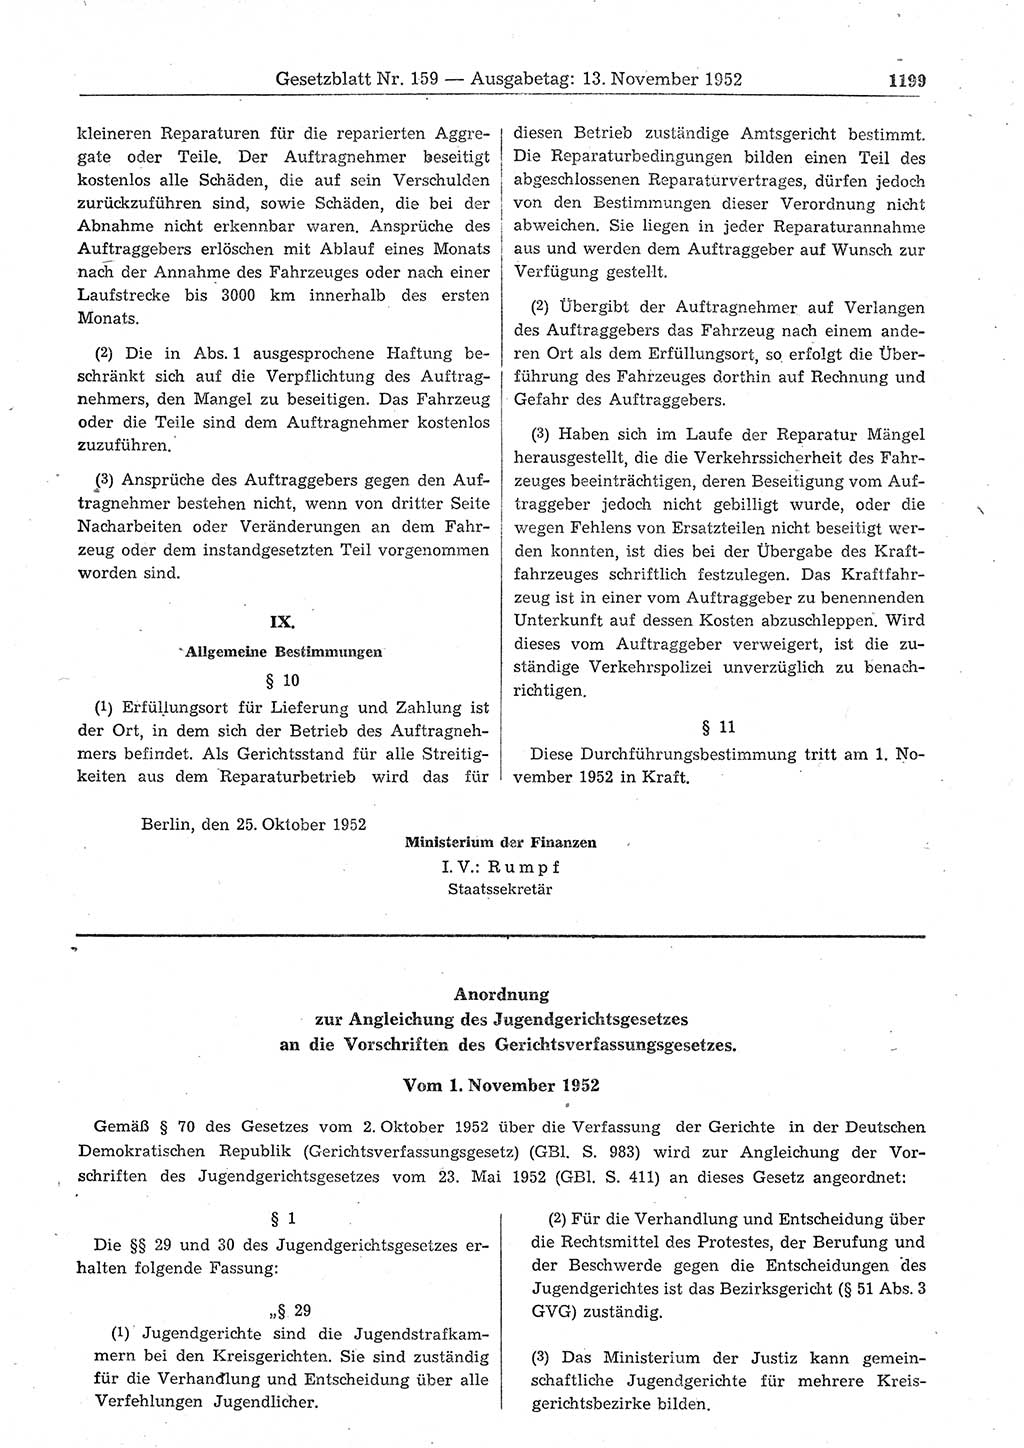 Gesetzblatt (GBl.) der Deutschen Demokratischen Republik (DDR) 1952, Seite 1199 (GBl. DDR 1952, S. 1199)